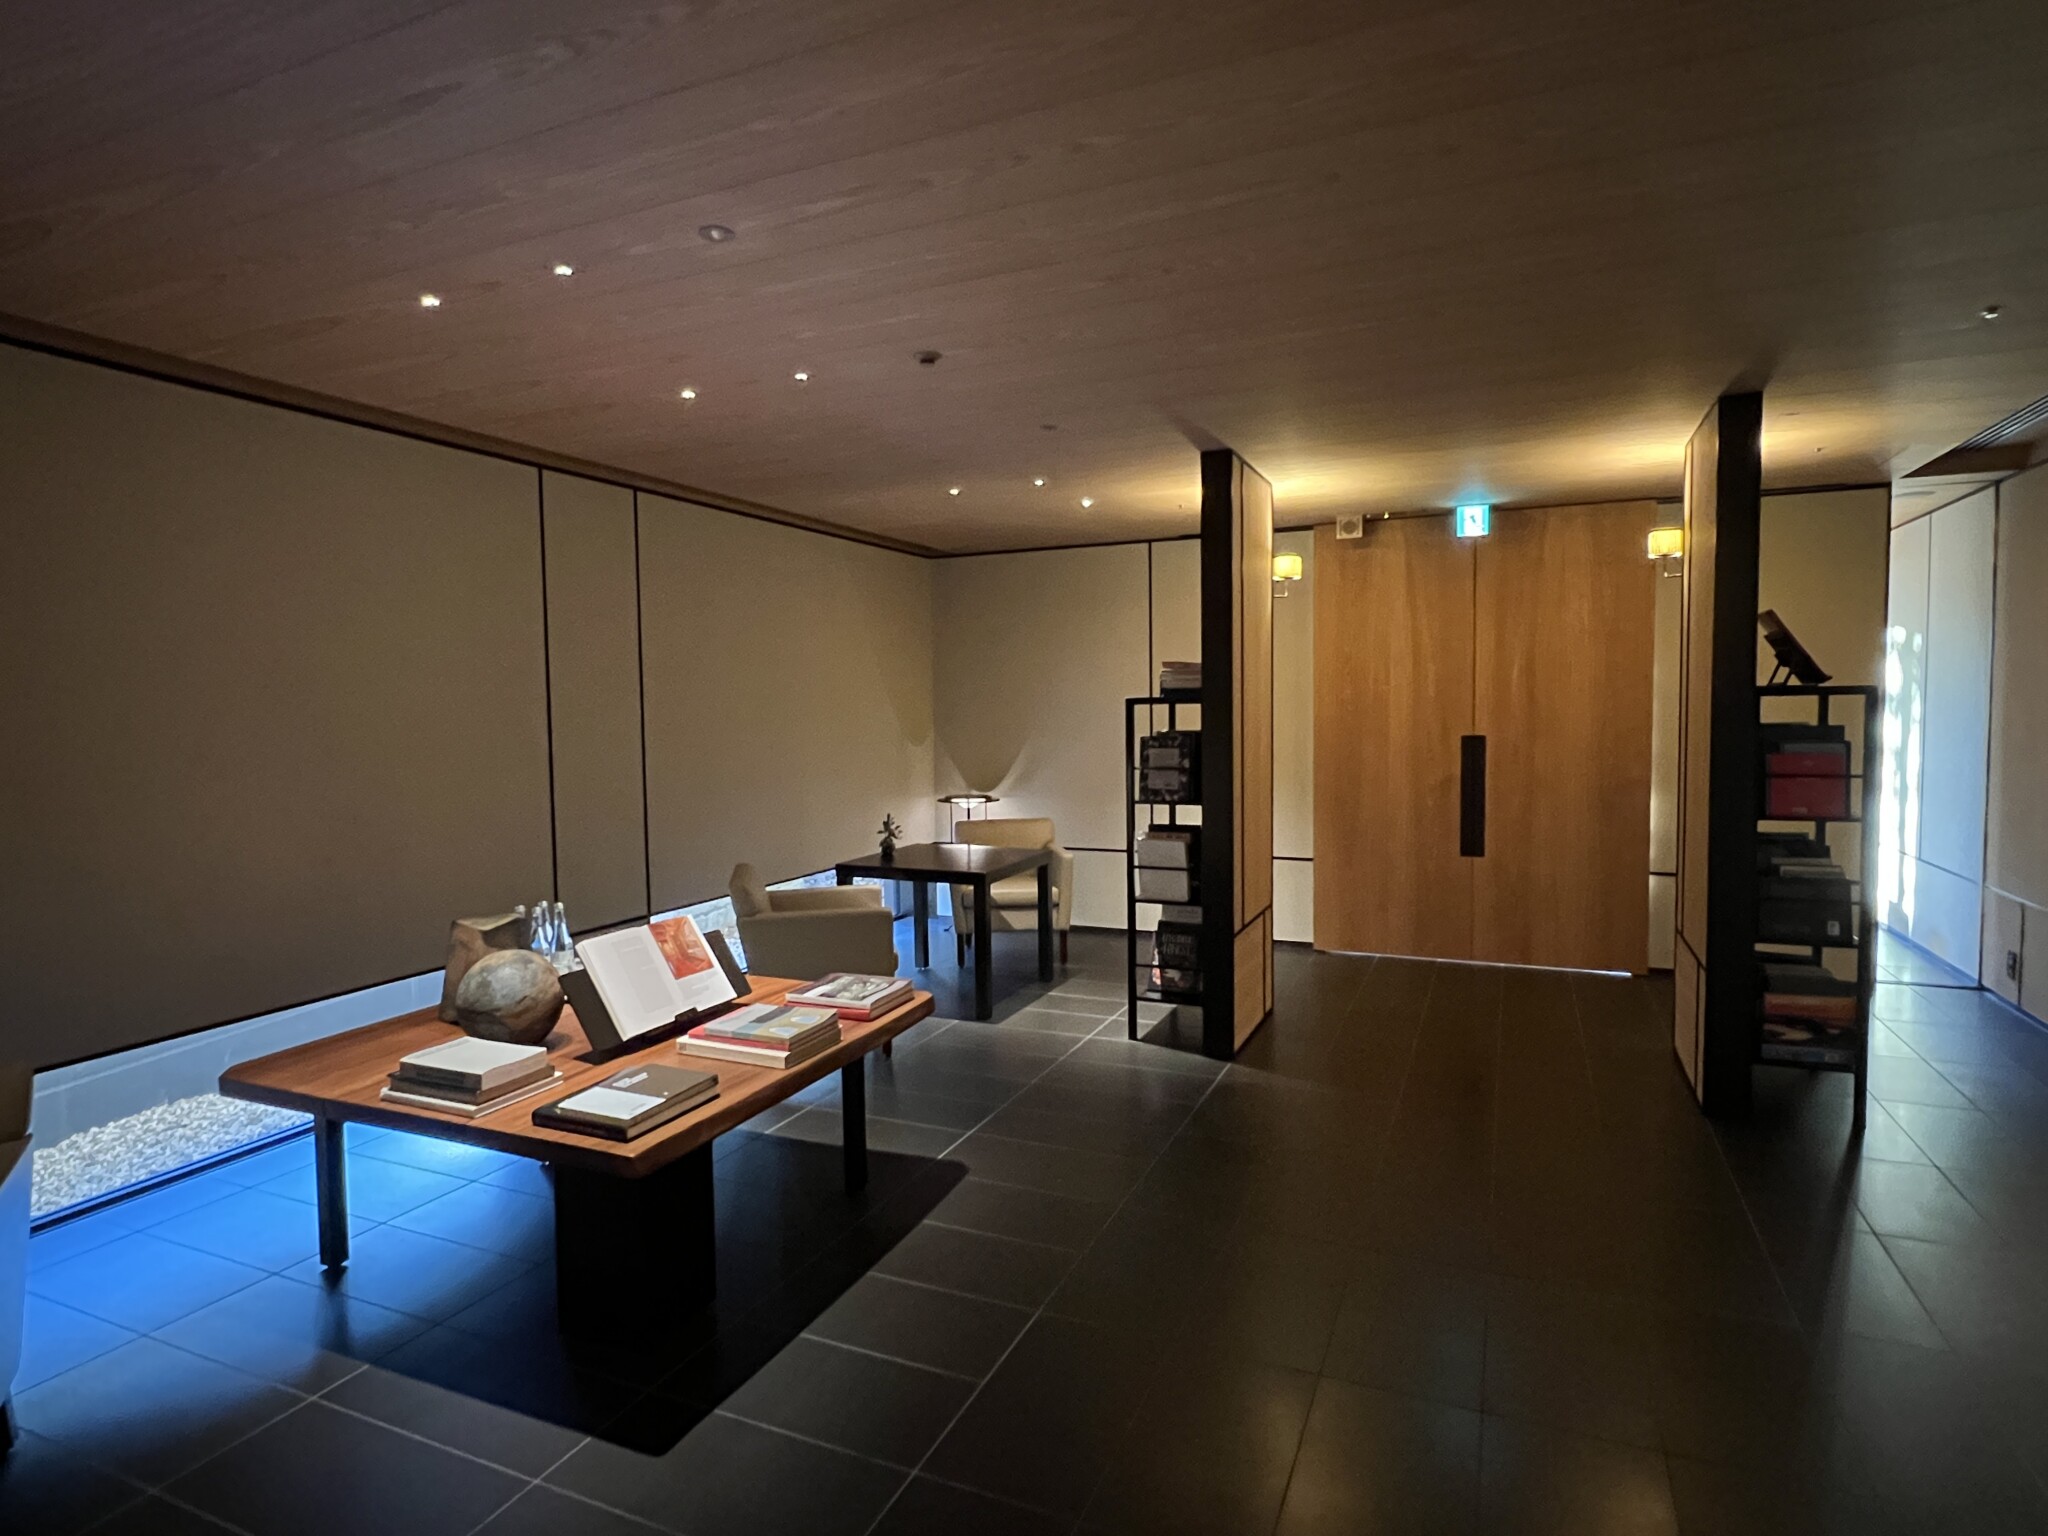 Conheça o Park Hyatt Kyoto – Um dos melhores hotéis do mundo